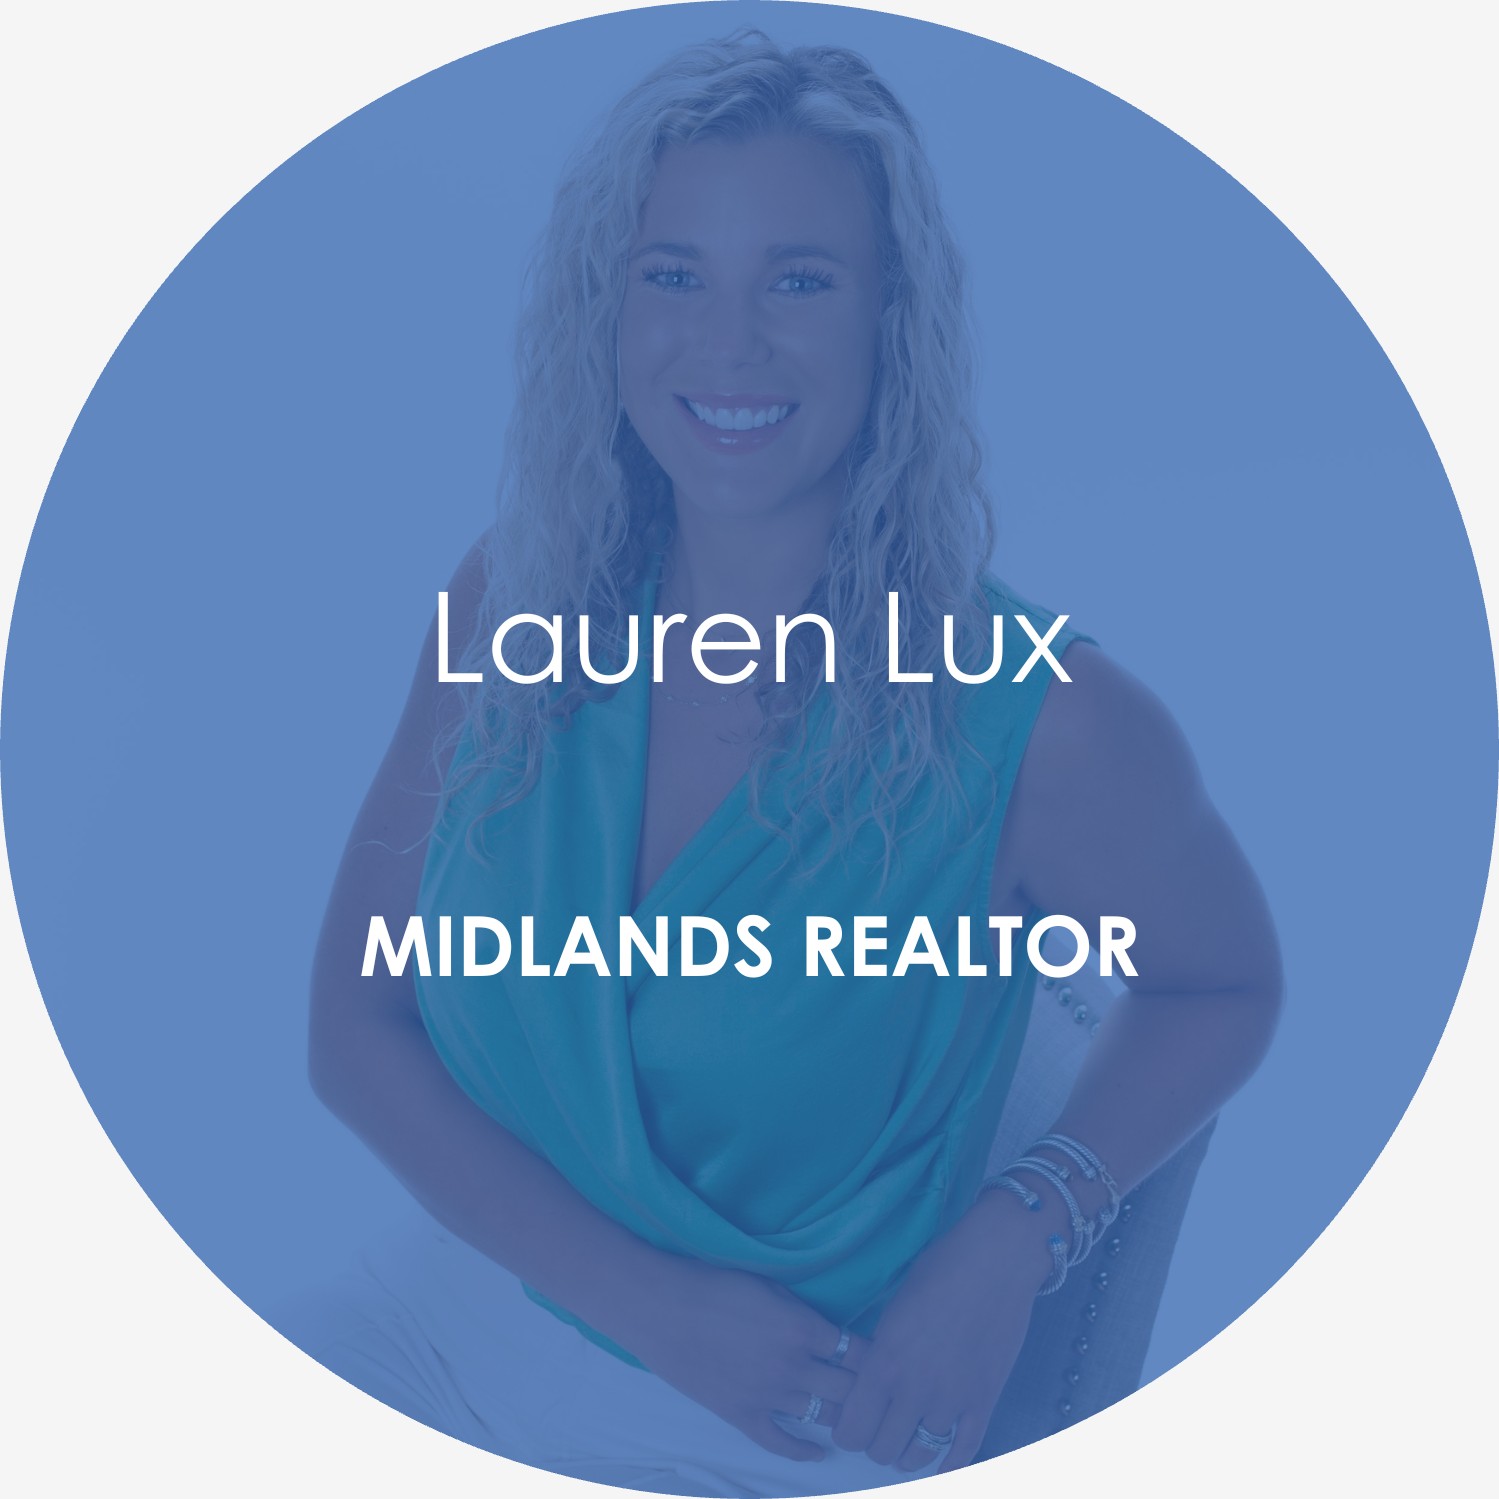  Lauren Lux – Midlands Realtor